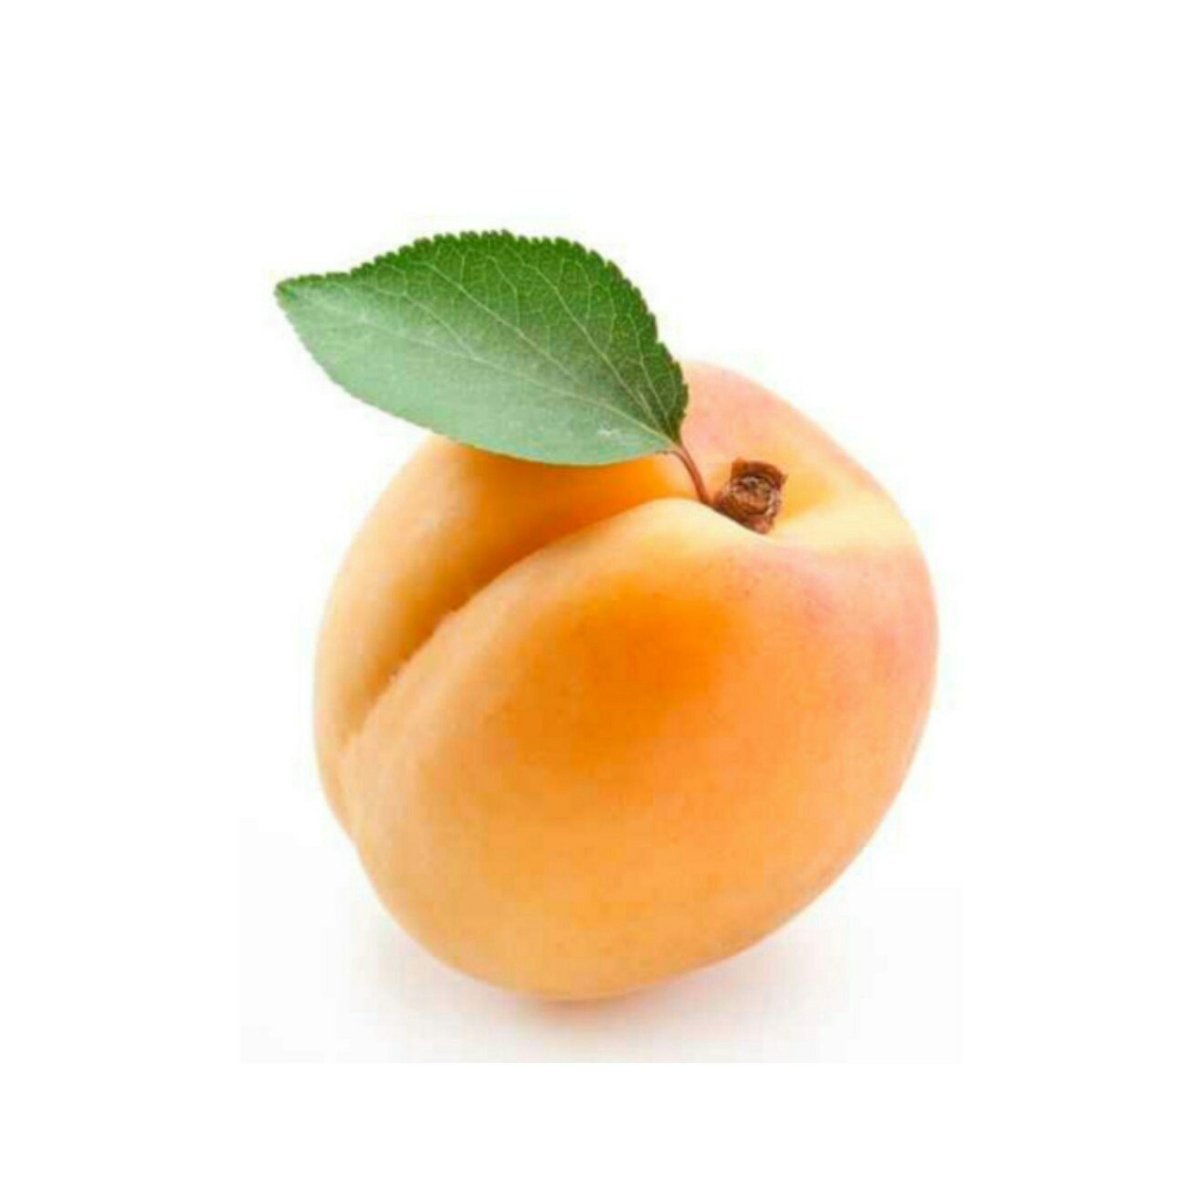 2 11 всех фруктов составляют персики. Фрукты по отдельности. Овощи и фрукты по отдельности. Абрикос на белом фоне. Фрукт абрикос для детей.